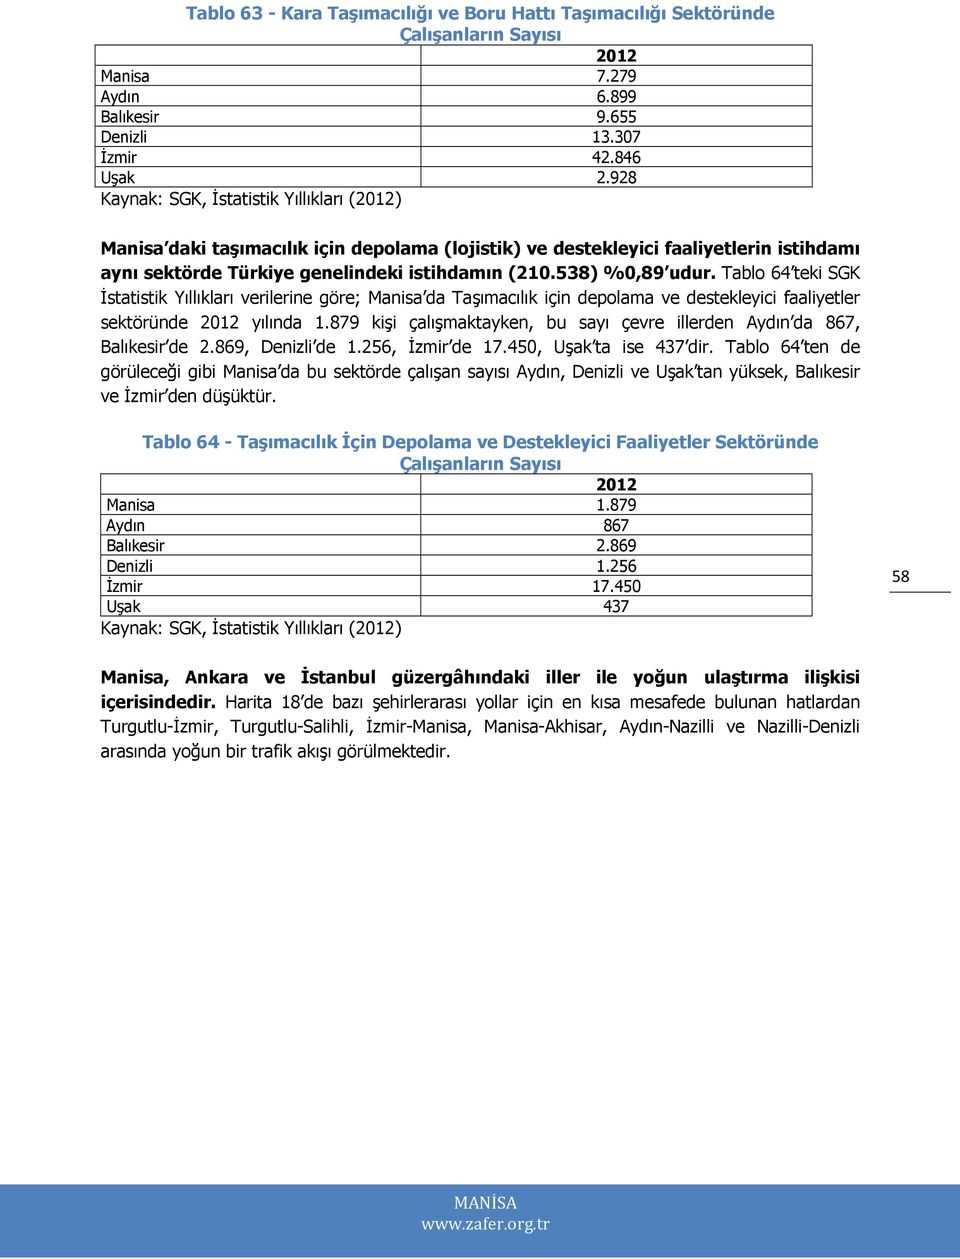 538) %0,89 udur. Tablo 64 teki SGK İstatistik Yıllıkları verilerine göre; Manisa da Taşımacılık için depolama ve destekleyici faaliyetler sektöründe 2012 yılında 1.